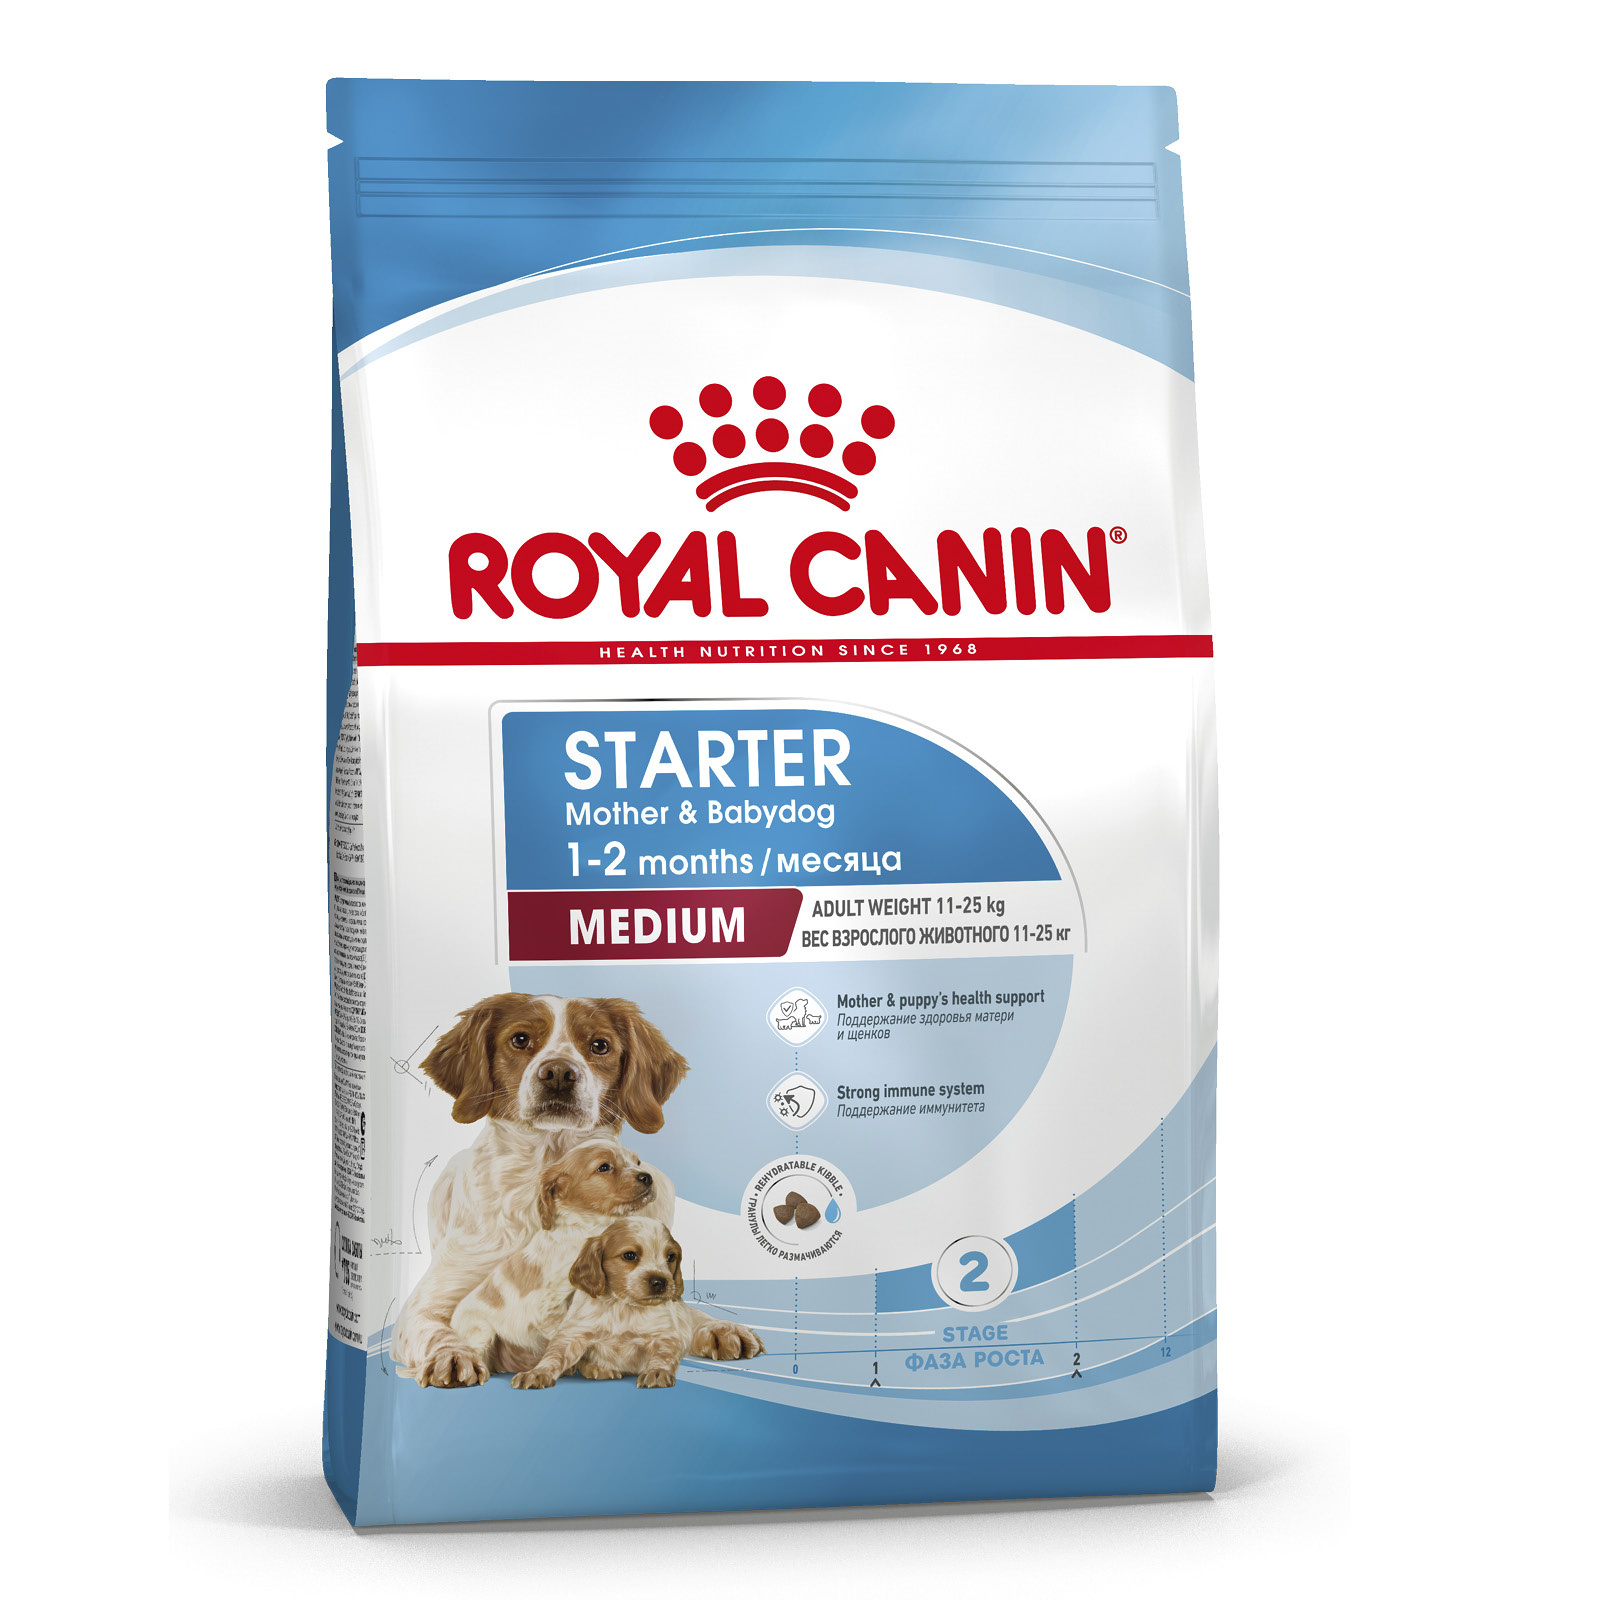 Royal Canin Корм Royal Canin для щенков средних пород от 3 недель до 2 месяцев, беременных и кормящих сук (12 кг) 41501